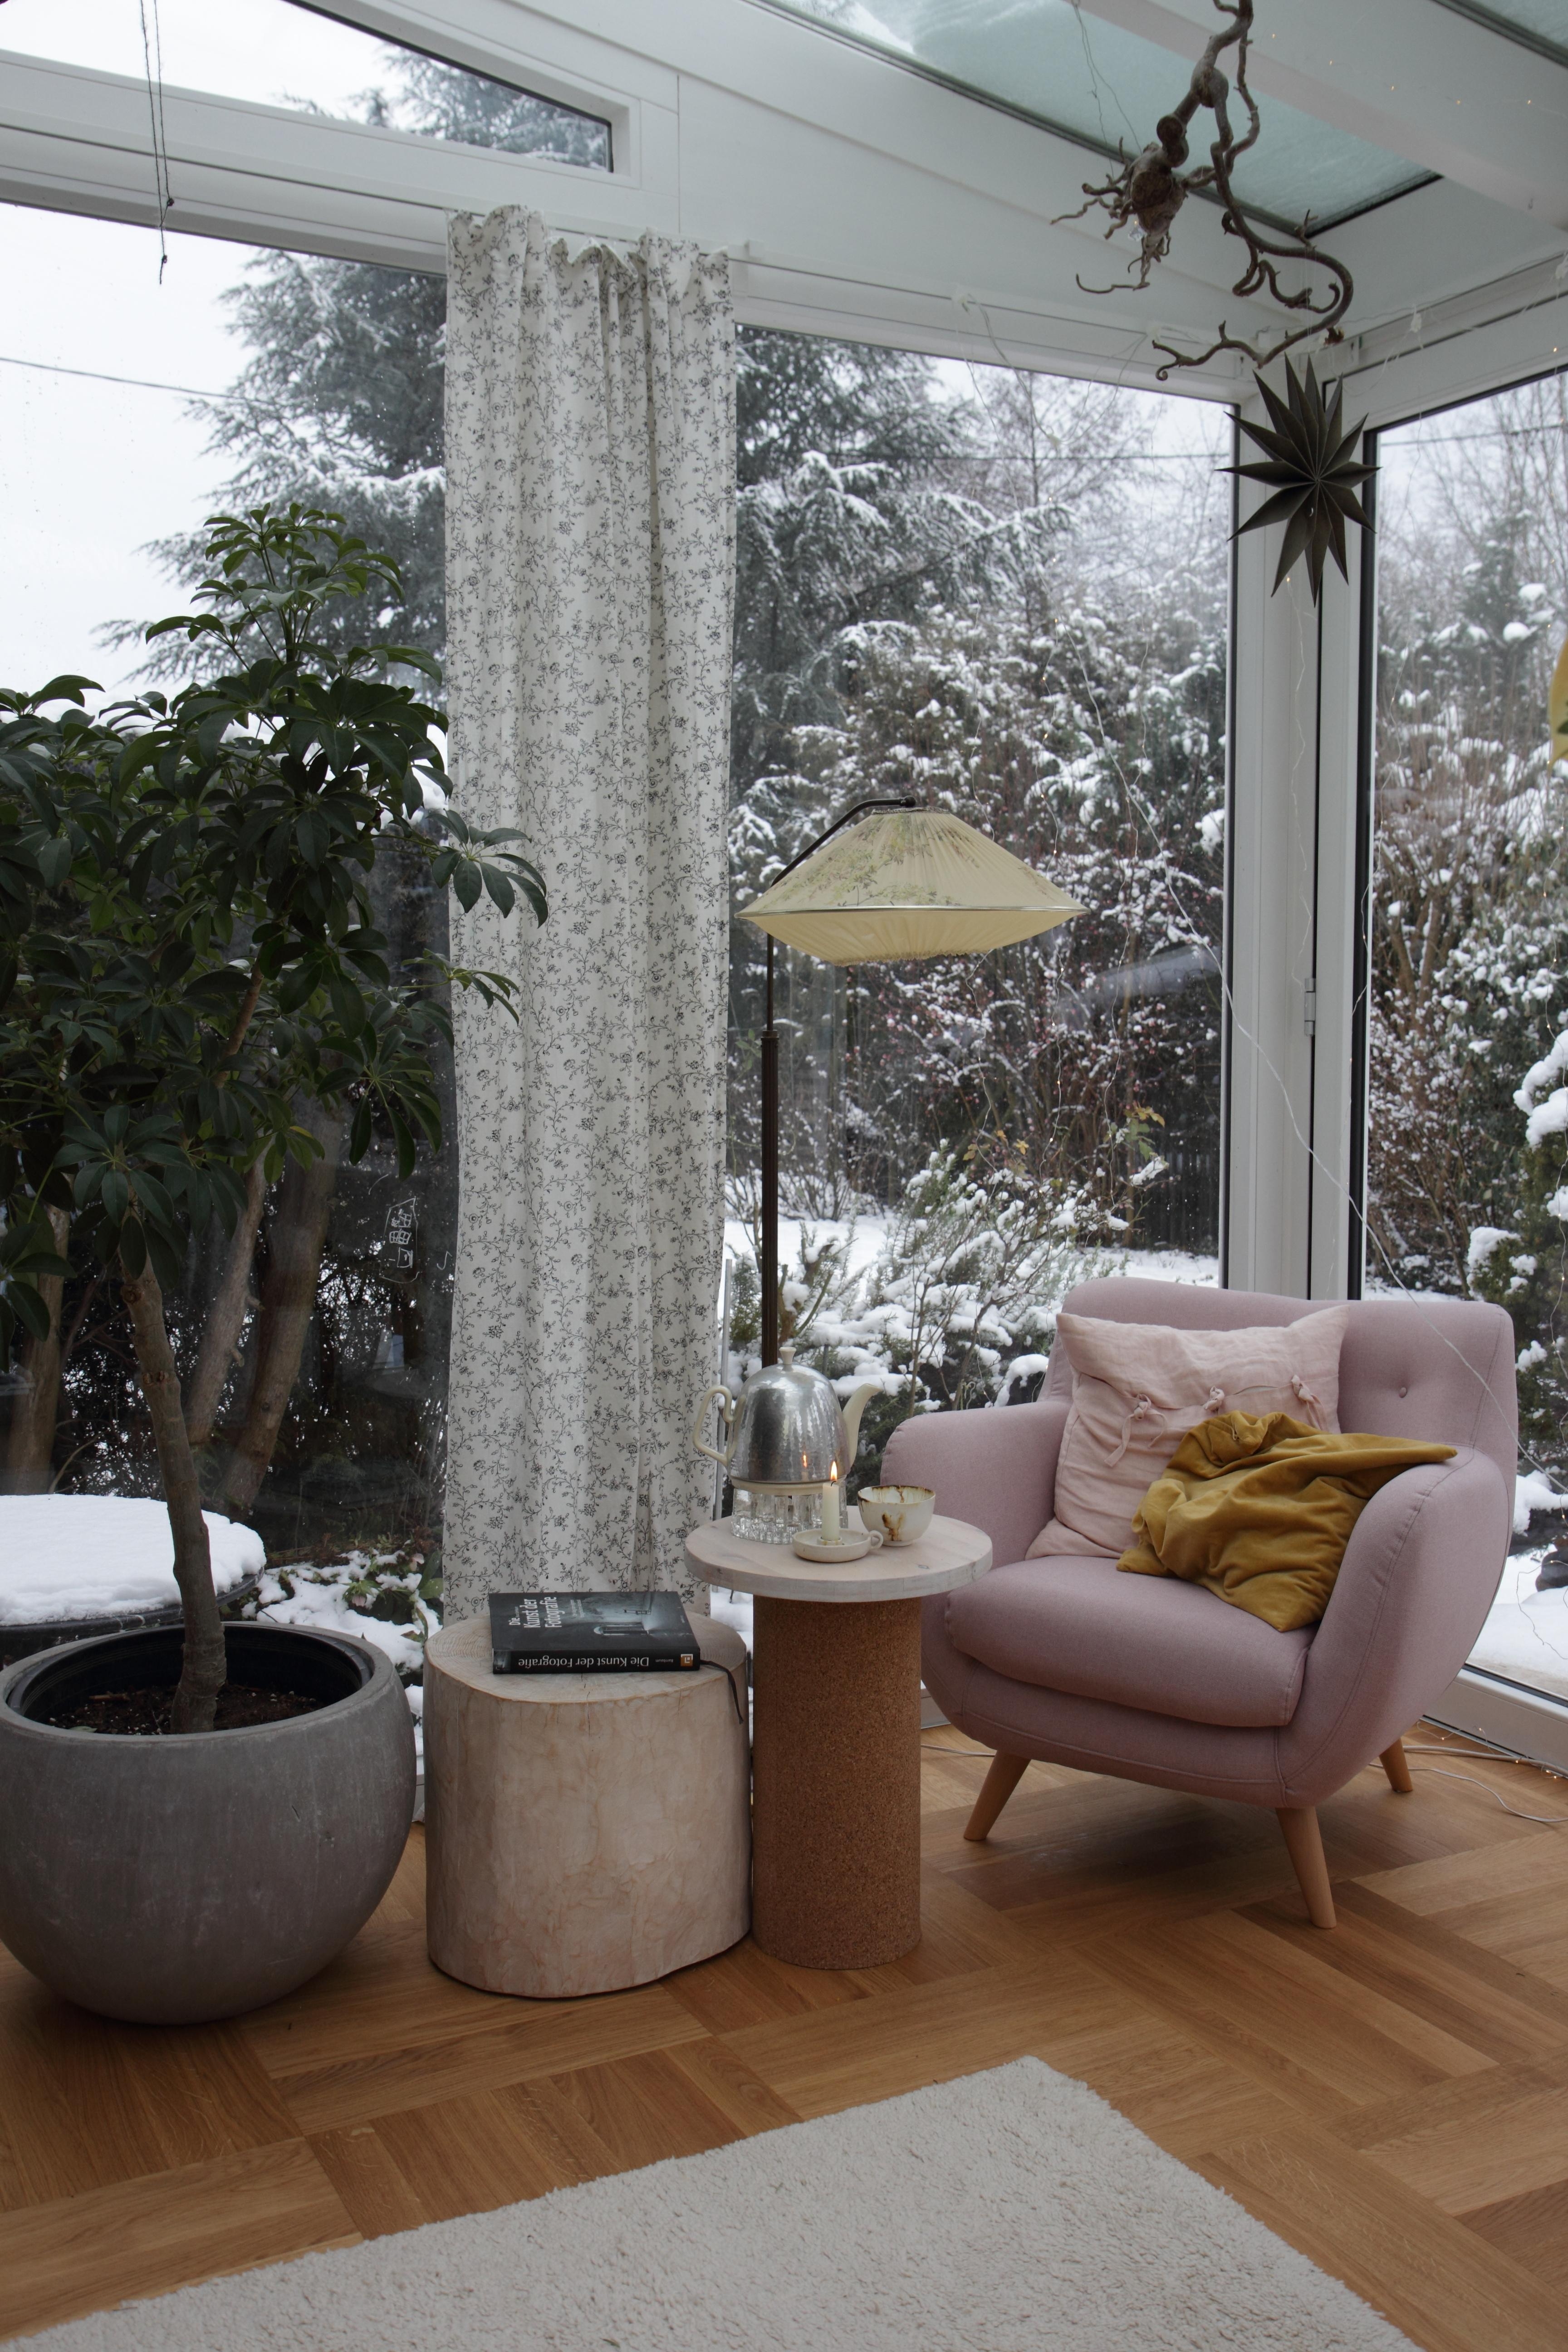 #Wohnen #windowview #livingroom #Wintergarten #vintage #diytable #mudcentury
